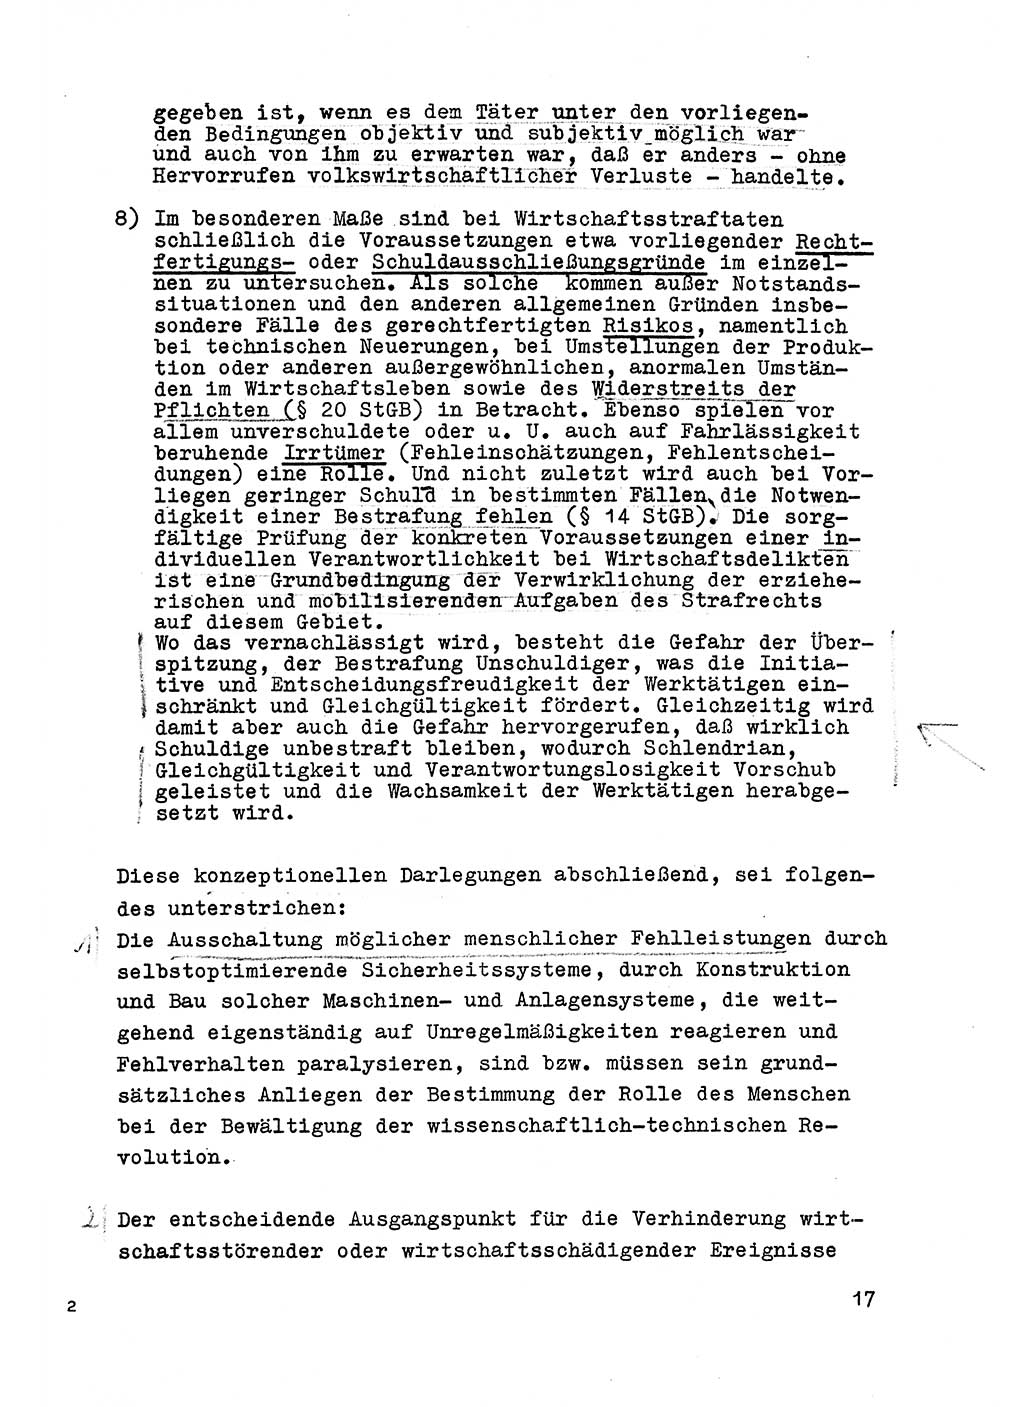 Strafrecht der DDR (Deutsche Demokratische Republik), Besonderer Teil, Lehrmaterial, Heft 6 1970, Seite 17 (Strafr. DDR BT Lehrmat. H. 6 1970, S. 17)